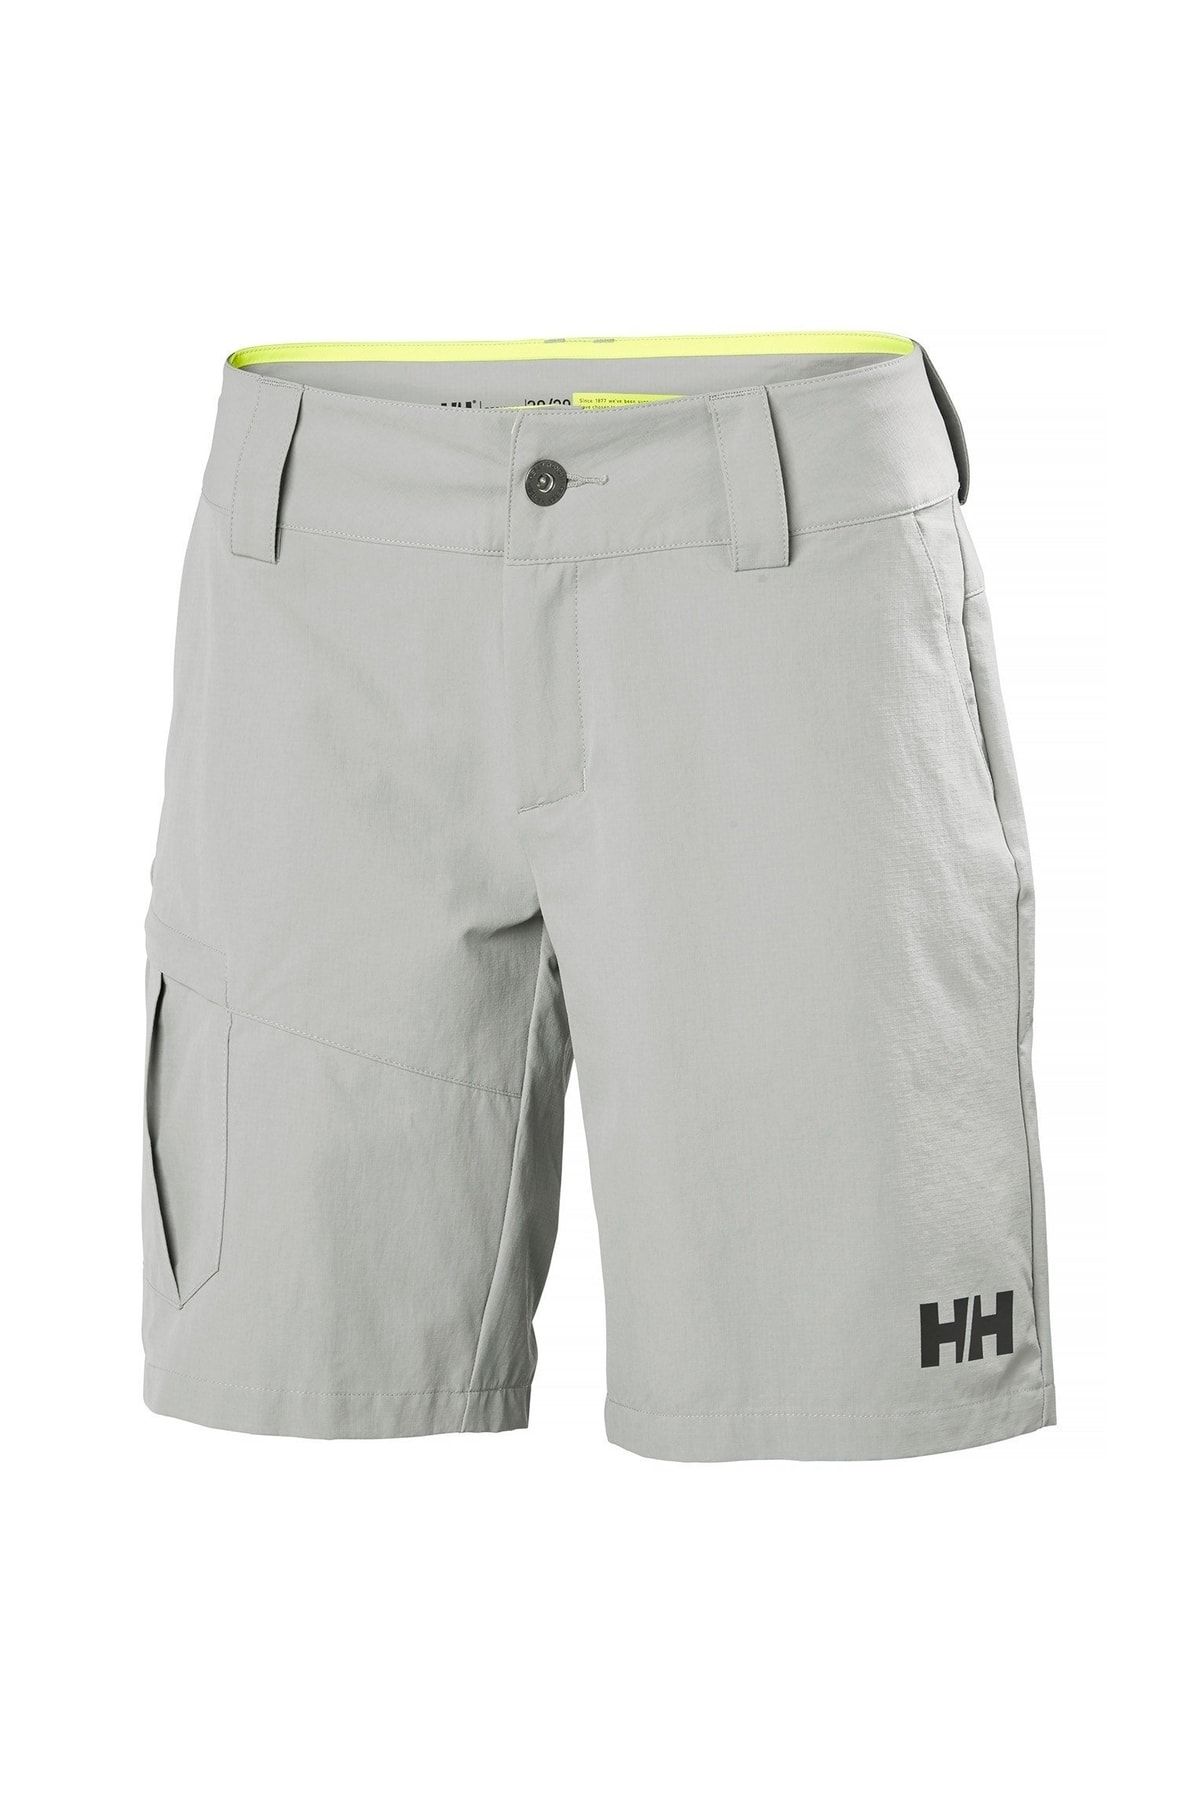 Helly Hansen Hh W Qd Cargo Shorts - Grey Fog